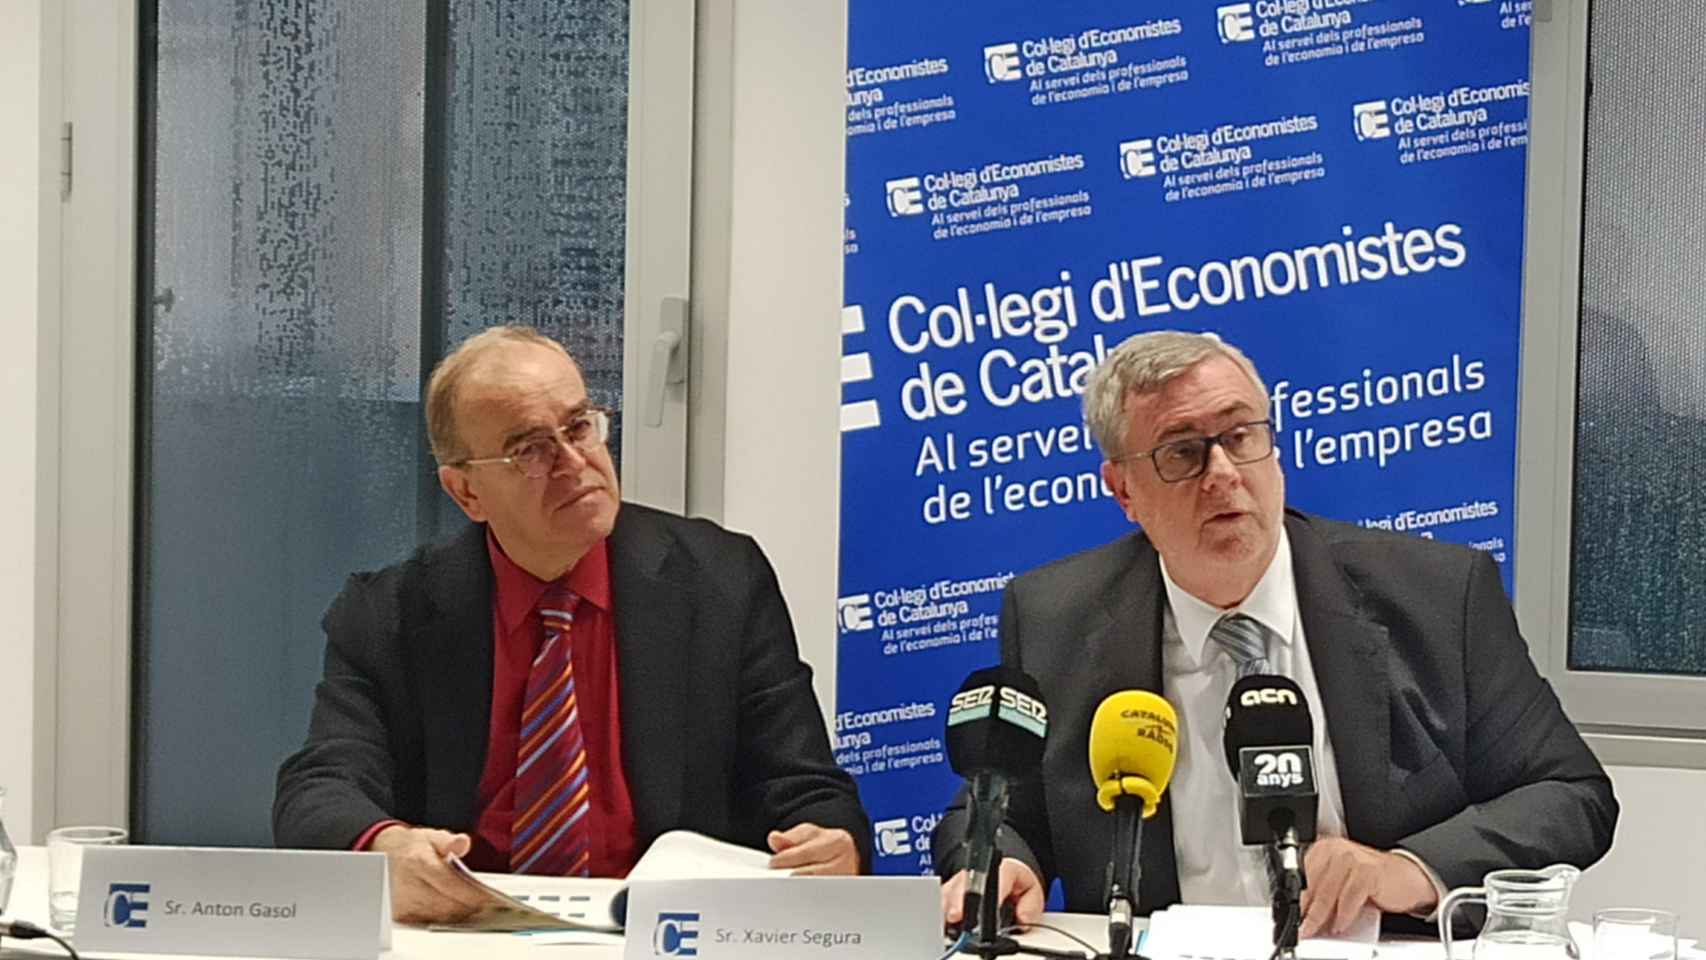 Xavier Segura y Anton Gasol durante la presentación de la encuesta sobre la situación económica de otoño de 2019 / COLEGIO DE ECONOMISTAS DE CATALUÑA